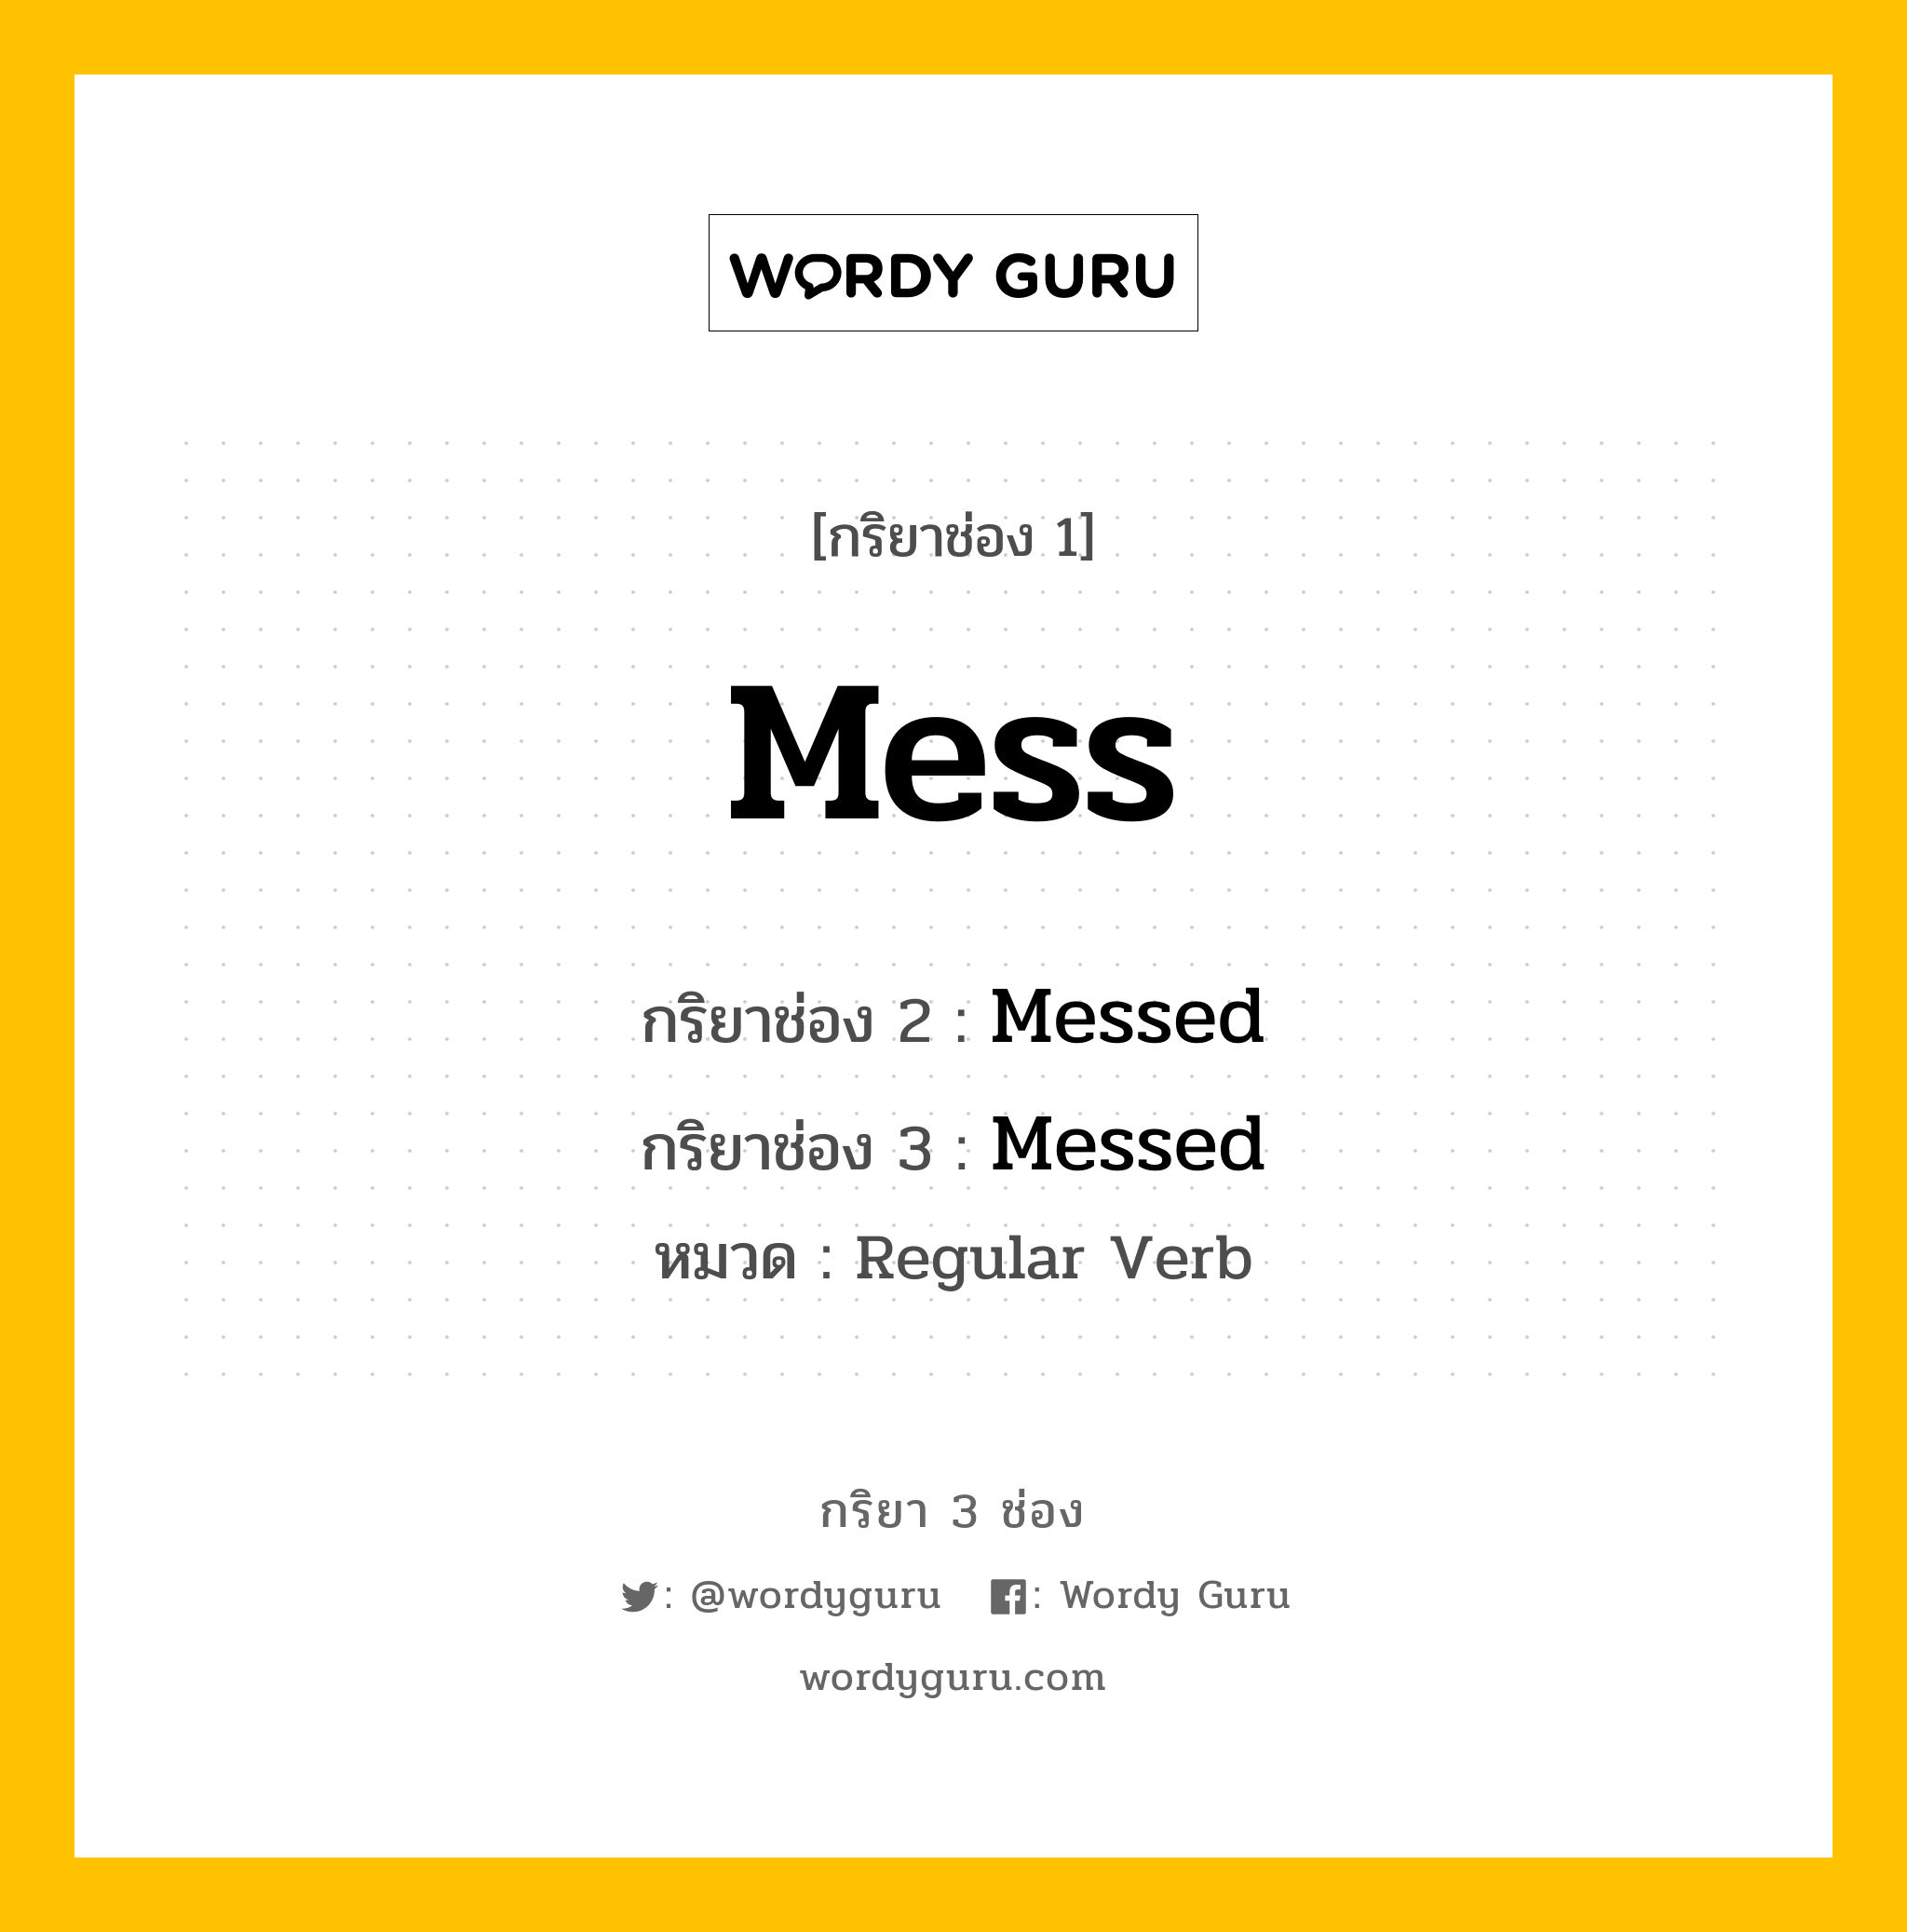 กริยา 3 ช่อง: Mess ช่อง 2 Mess ช่อง 3 คืออะไร, กริยาช่อง 1 Mess กริยาช่อง 2 Messed กริยาช่อง 3 Messed หมวด Regular Verb หมวด Regular Verb